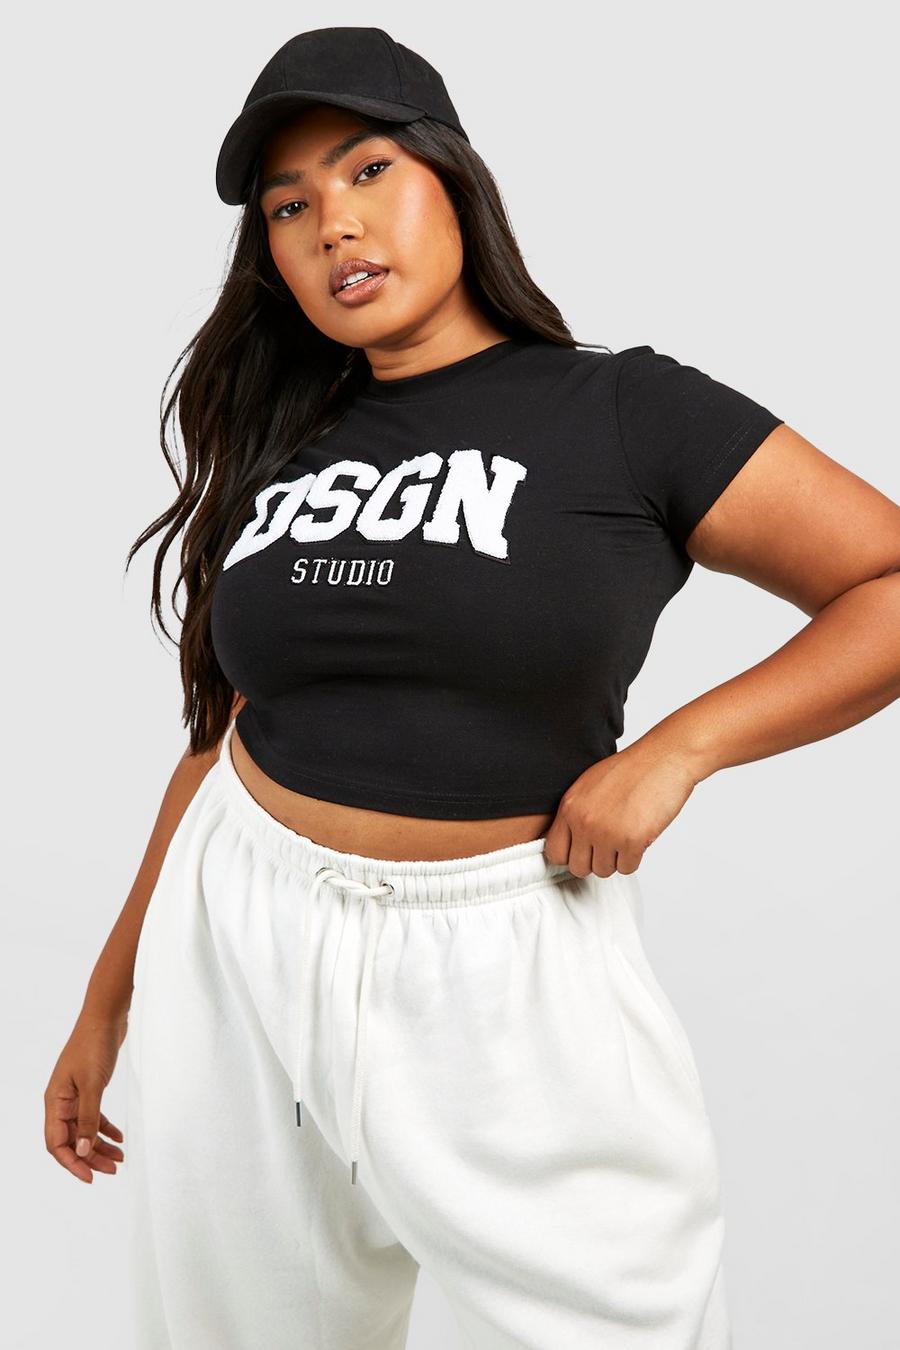 Grande taille - T-shirt en tissu éponge à slogan Dsgn Studio, Black